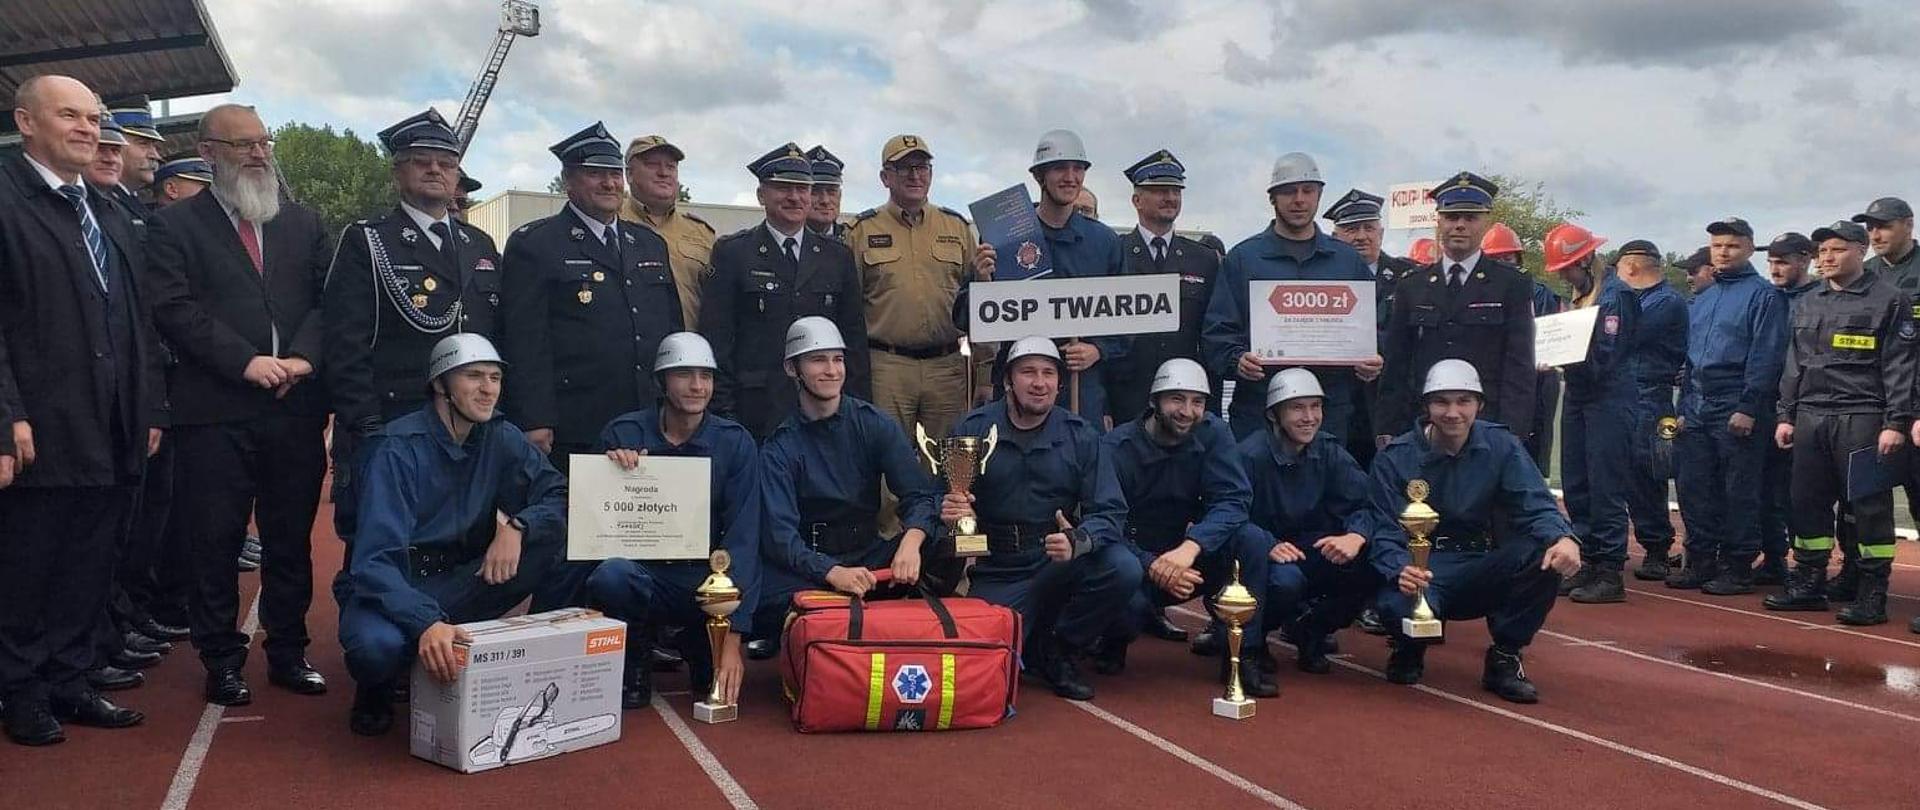 Na pierwszym planie widać męską drużynę pożarniczą z OSP Twarda. Za nimi stoją strażacy. Wszyscy stoją na bieżni tartanowej. Mężczyźni z OSP Twarda trzymają nagrody.